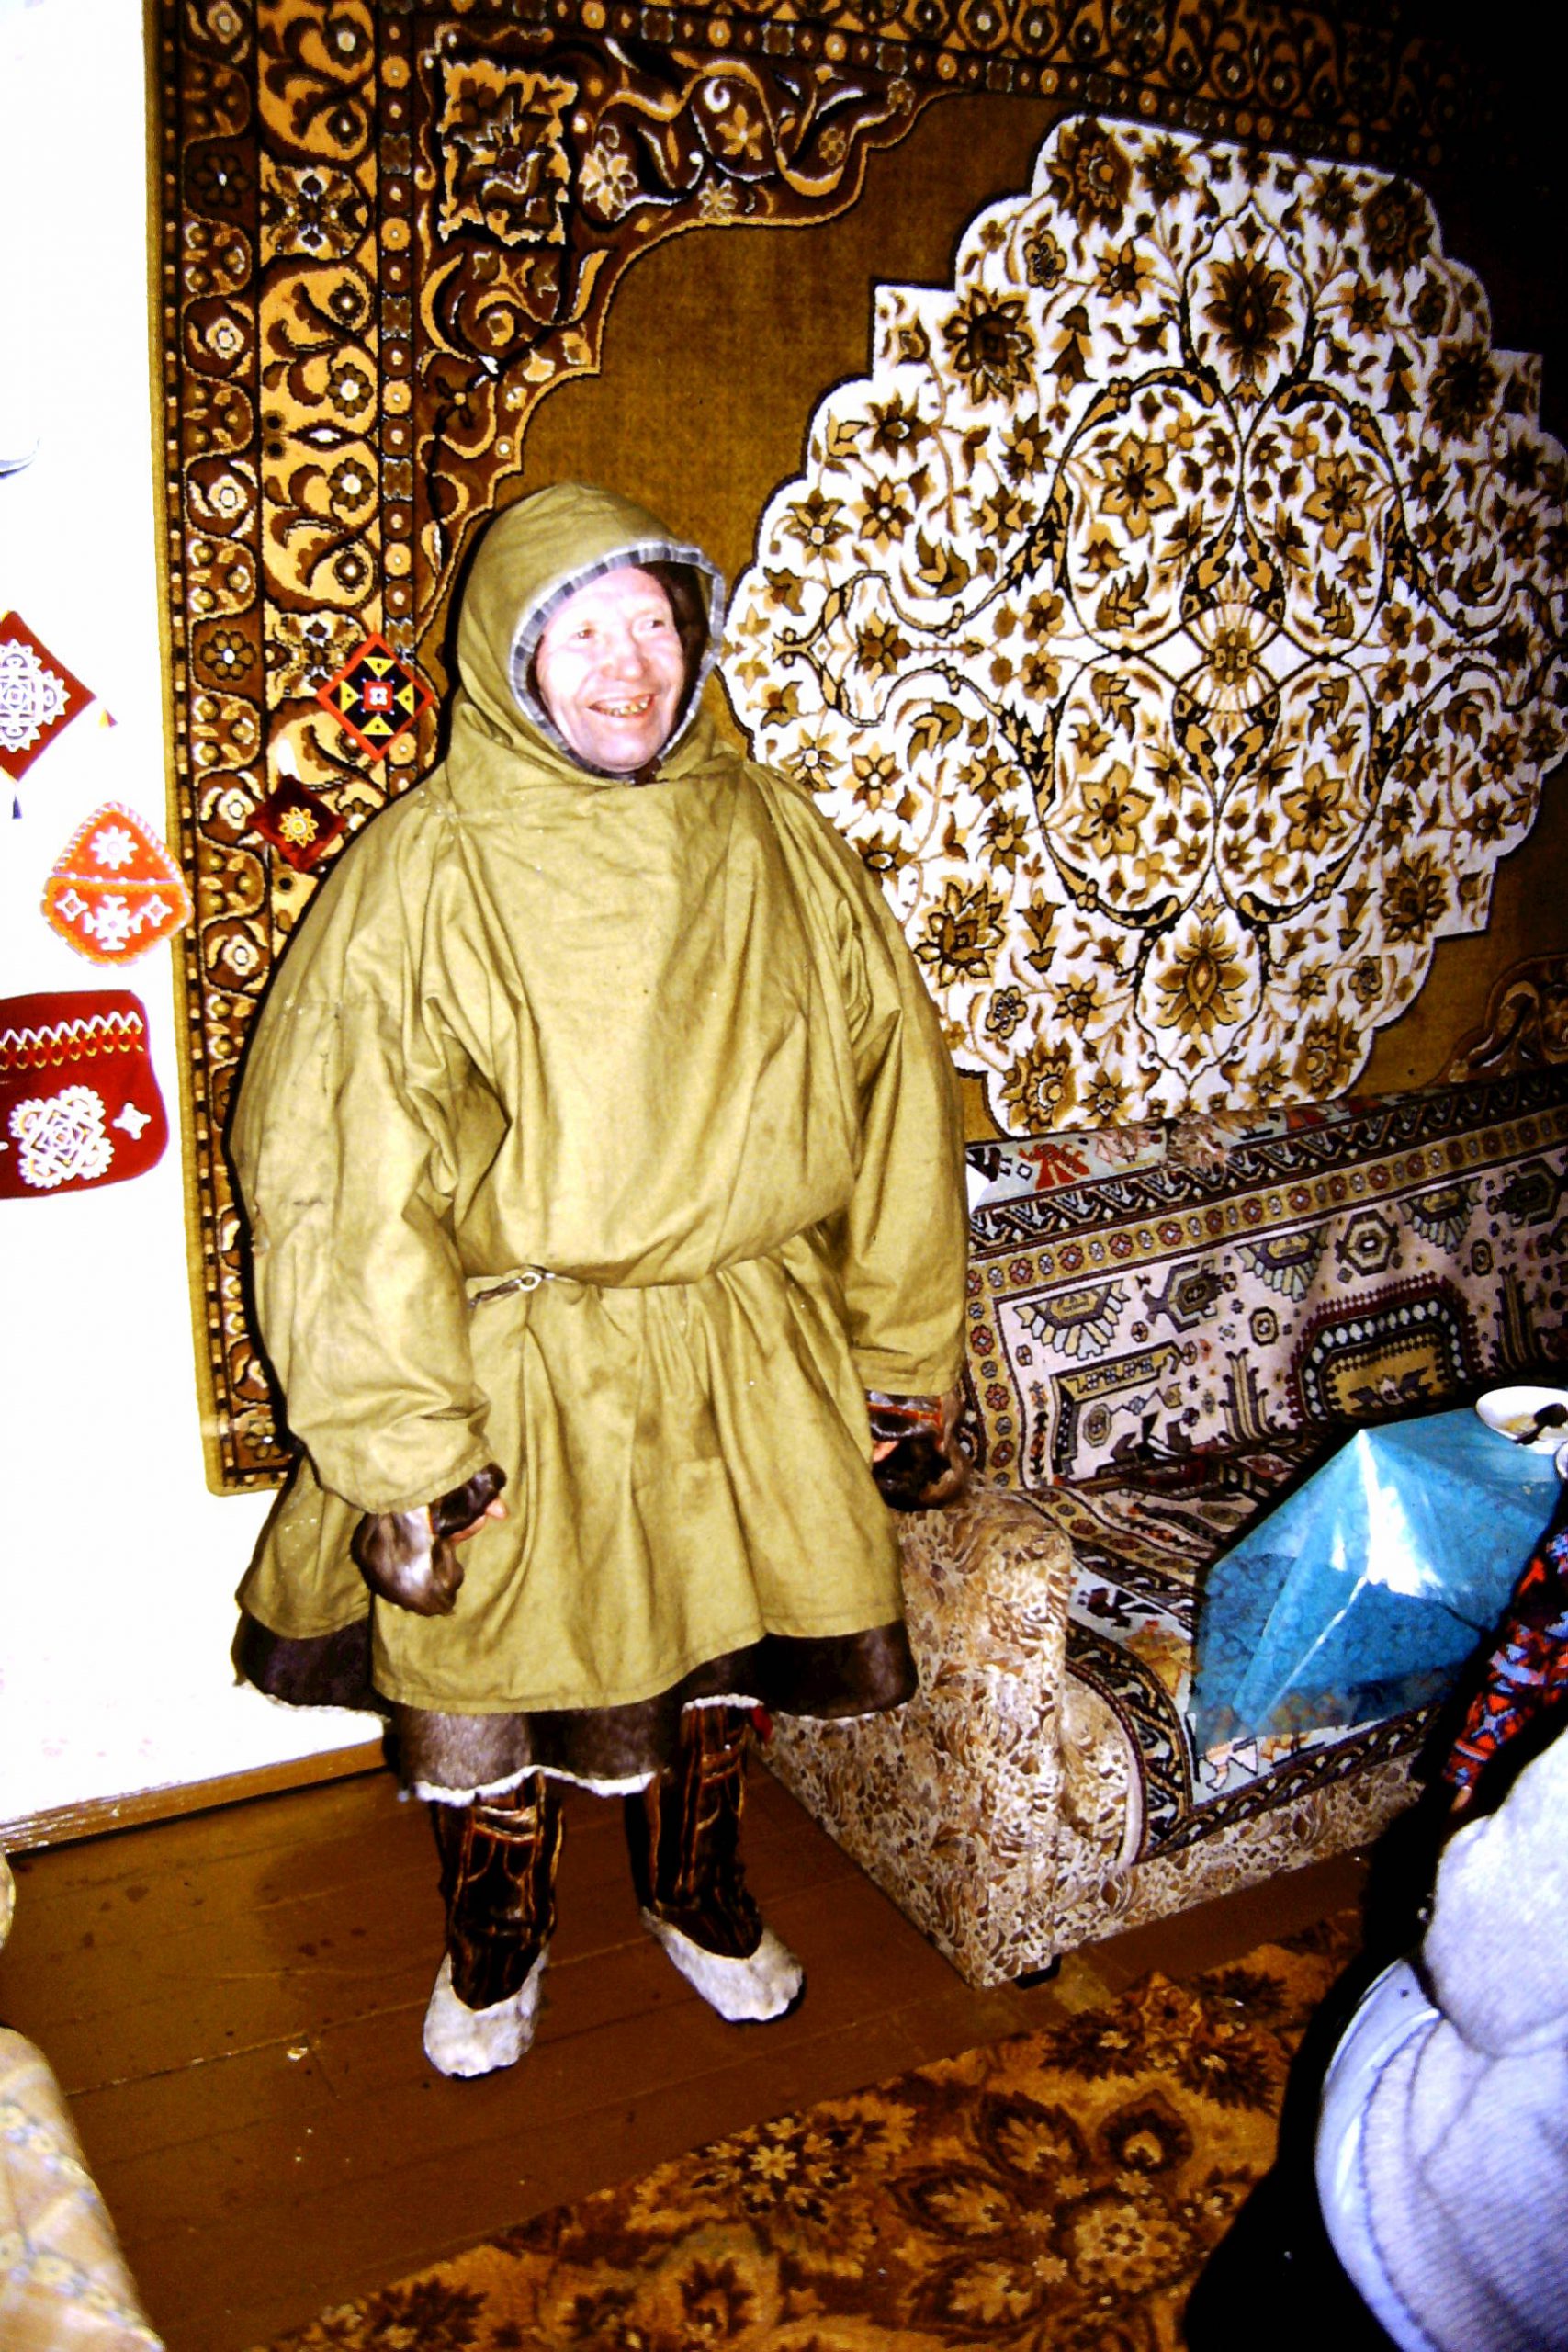 Renskötare Galkin i sin dräkt. Fotot är taget hemma hos honom. Foto Sven-Åke Risfjell